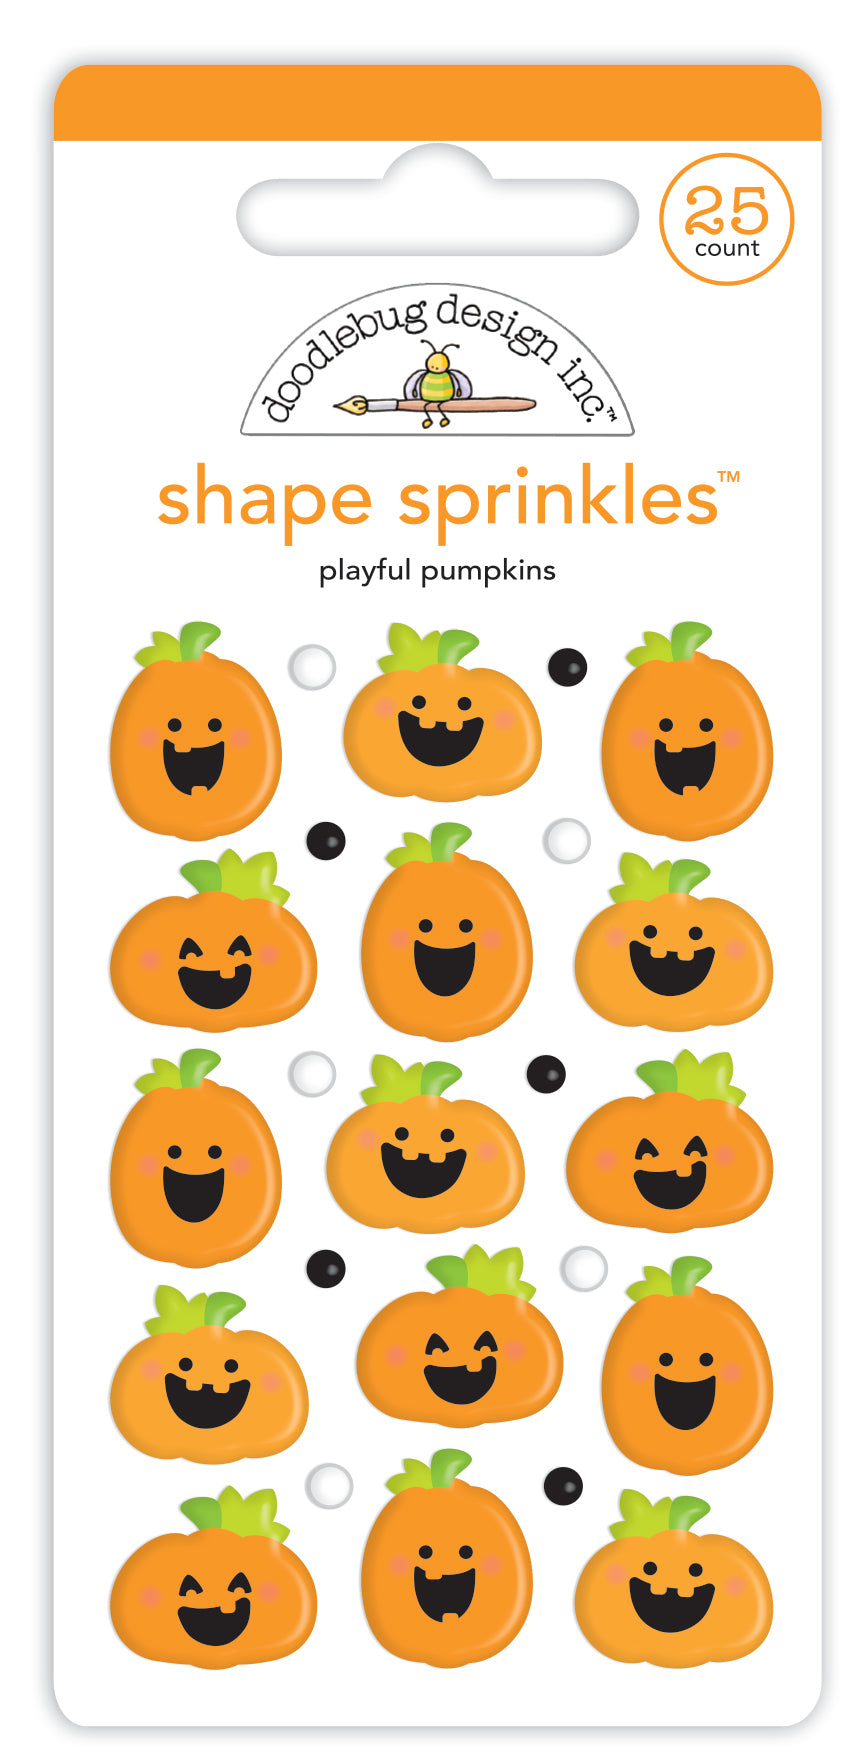 Playful Pumpkins Shaped Sprinkles by Doodlebug